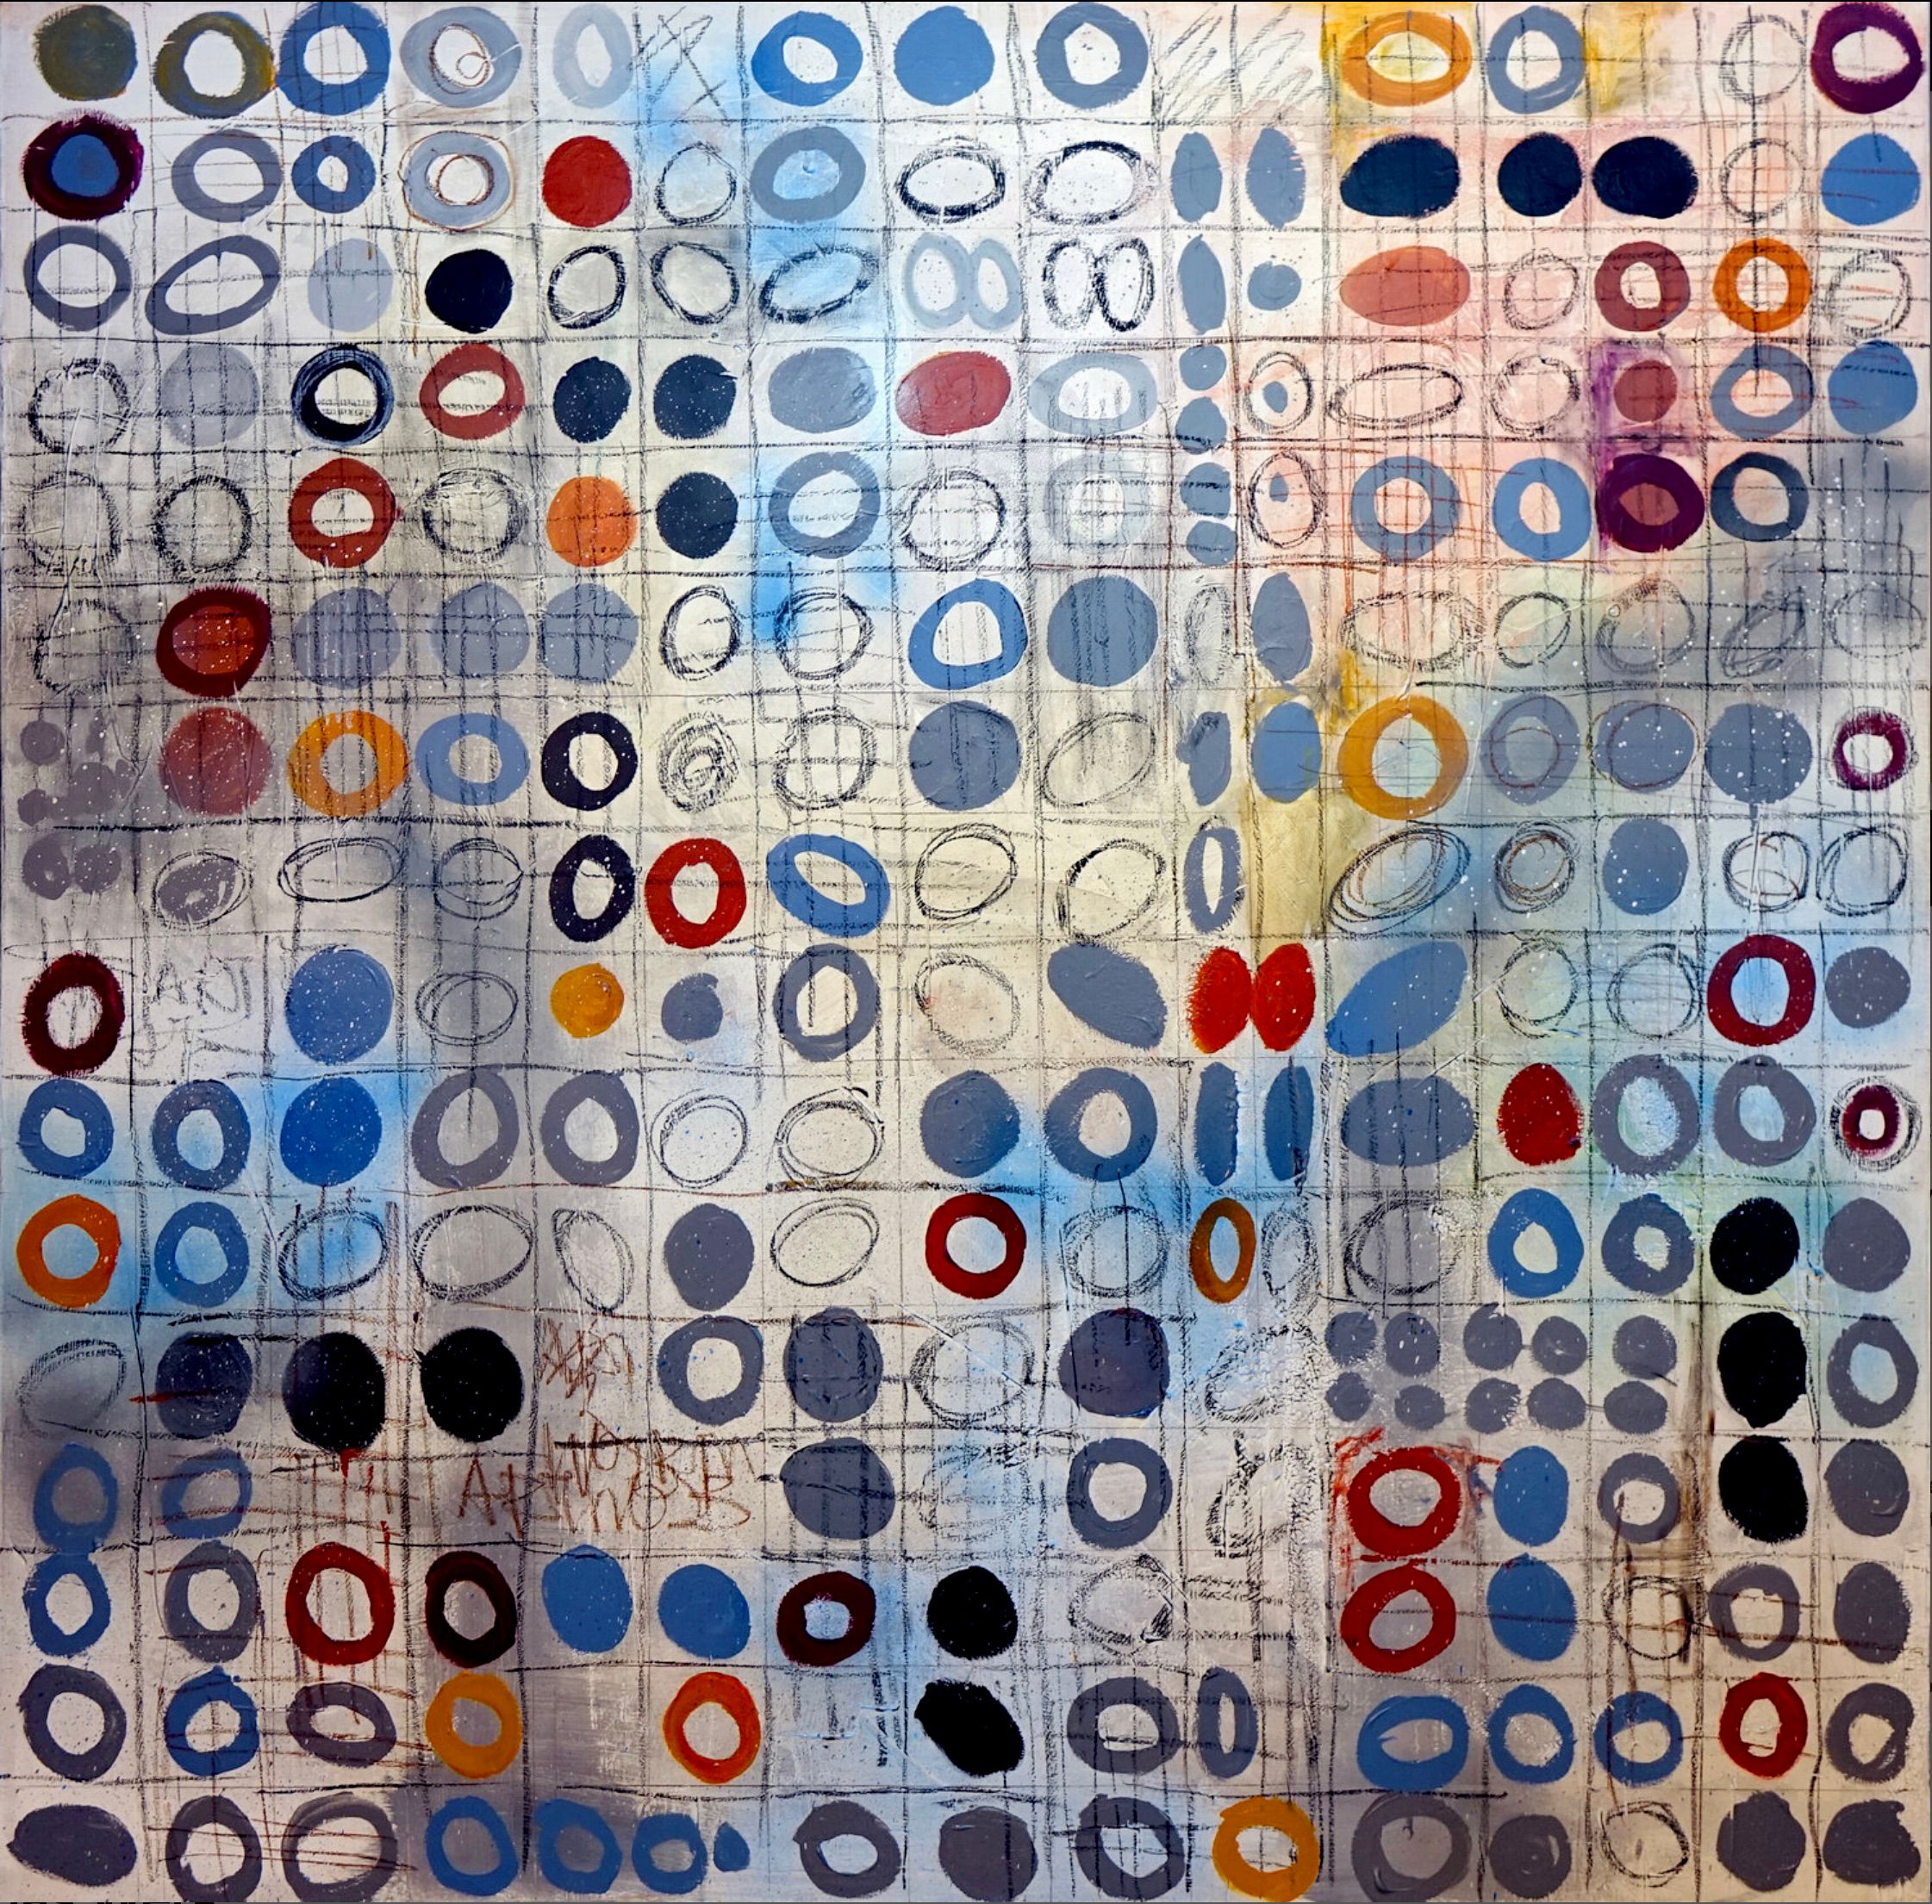 Wojtek Babski, "Circles 3", círculos y puntos, pintura pop art de gran formato sobre lienzo